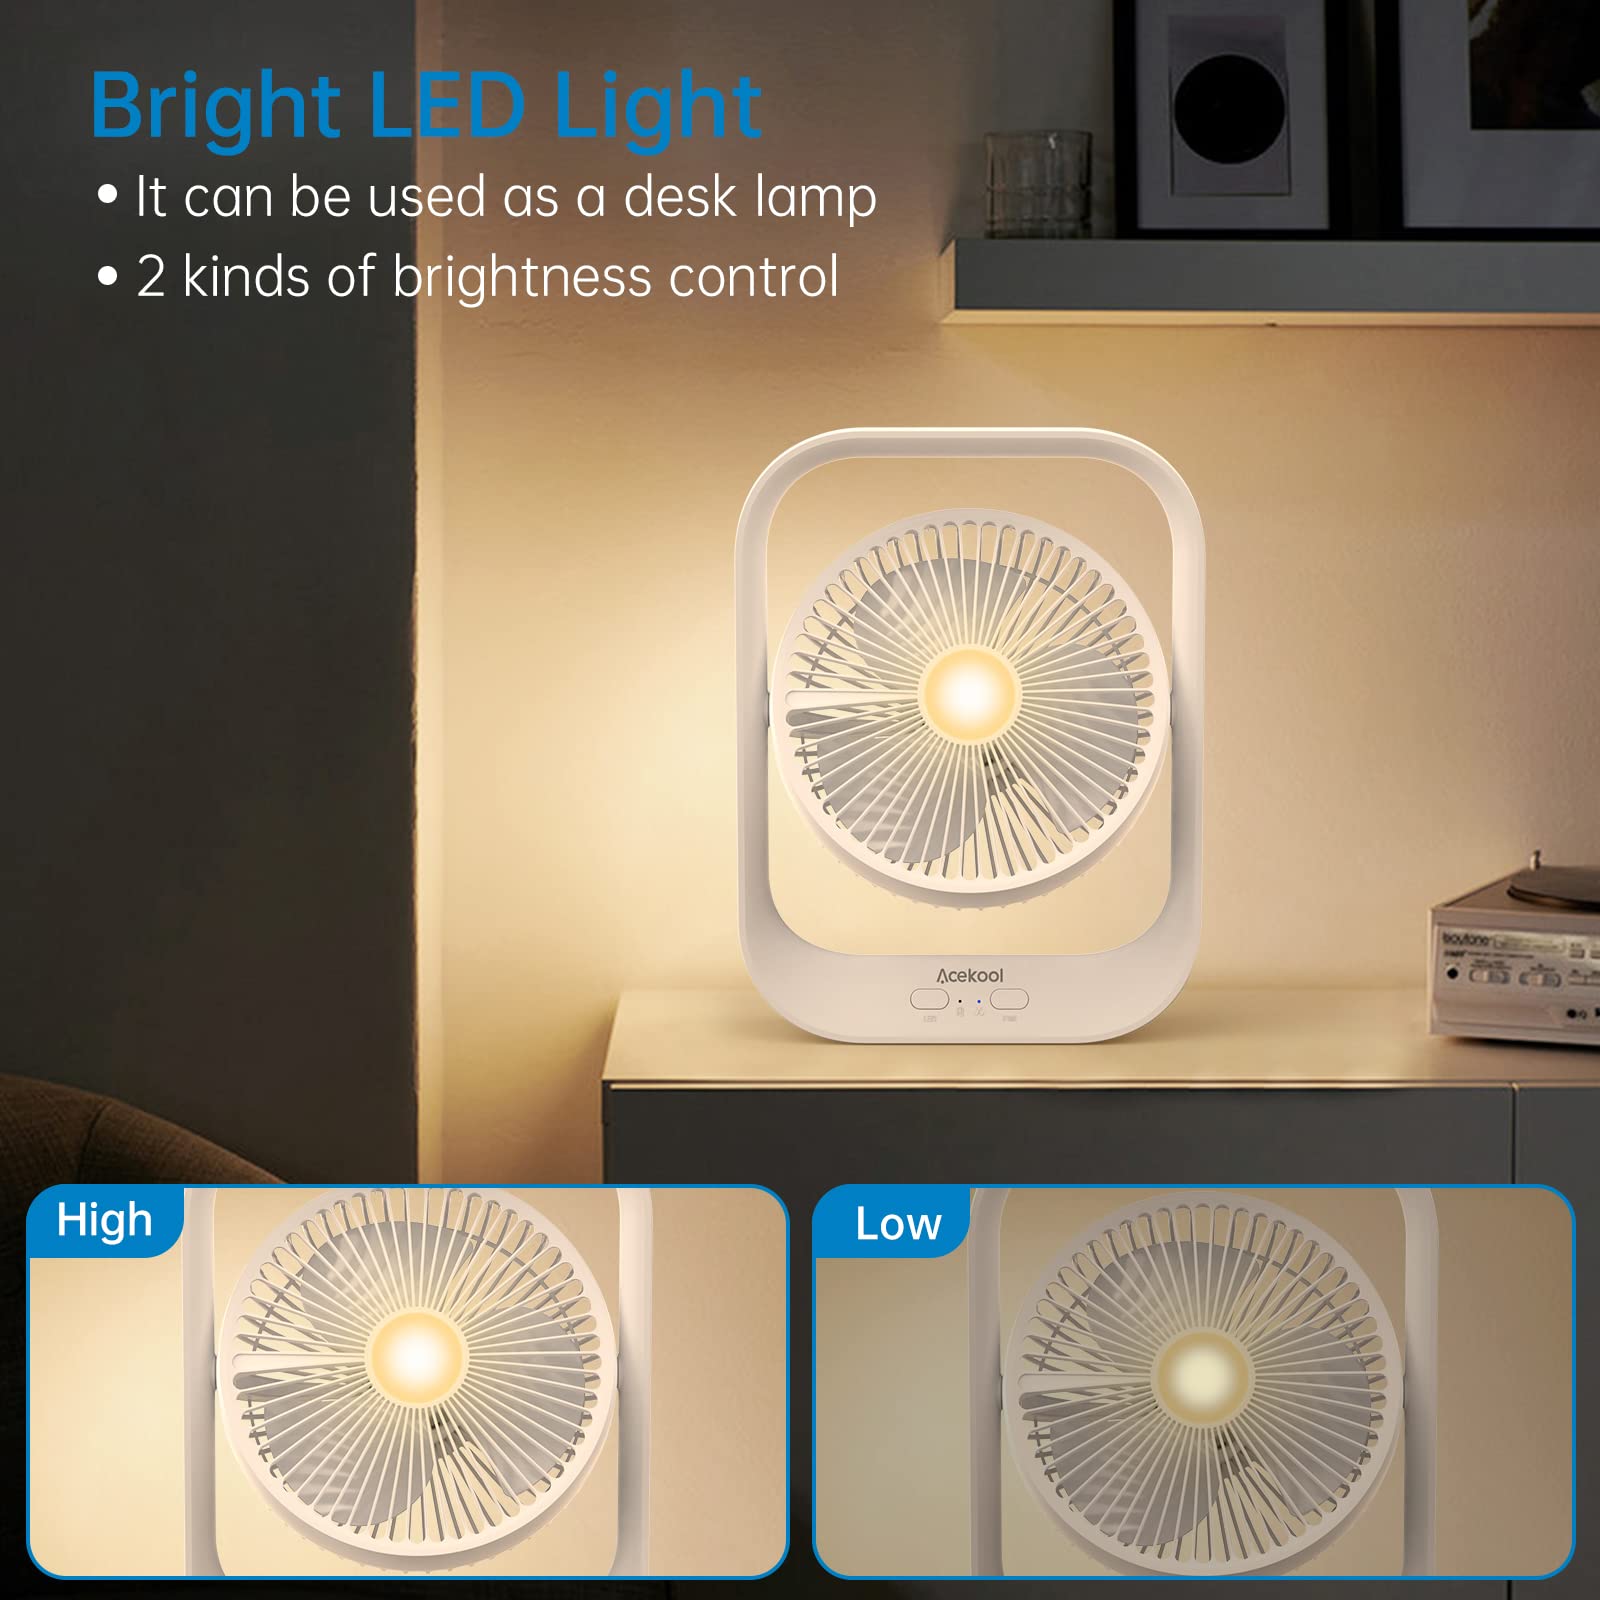 ACEKOOL Fan ND2 Rechargeable Desk Fan with Night Light - White